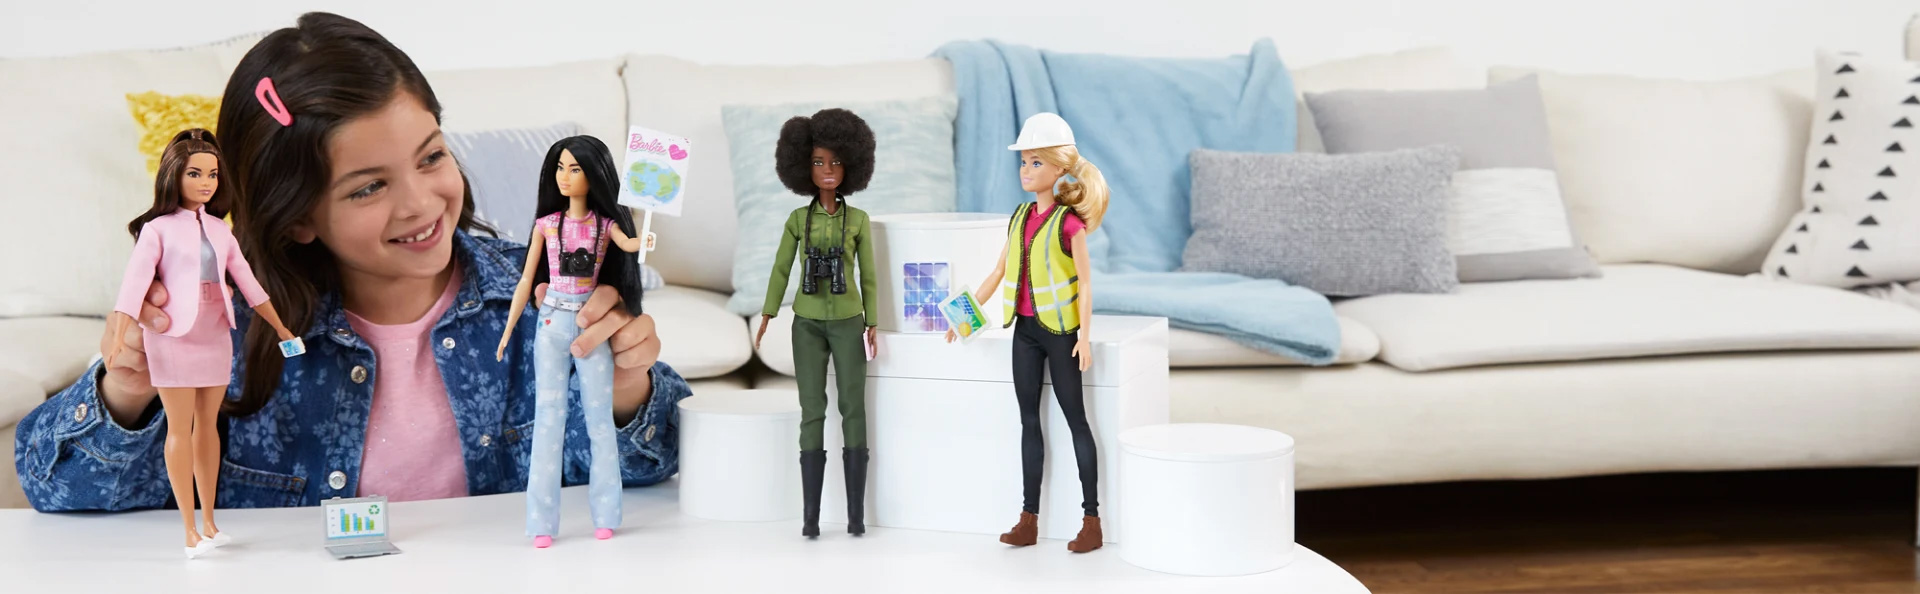 Jugando con muñecas Barbie Equipo Eco-líderes